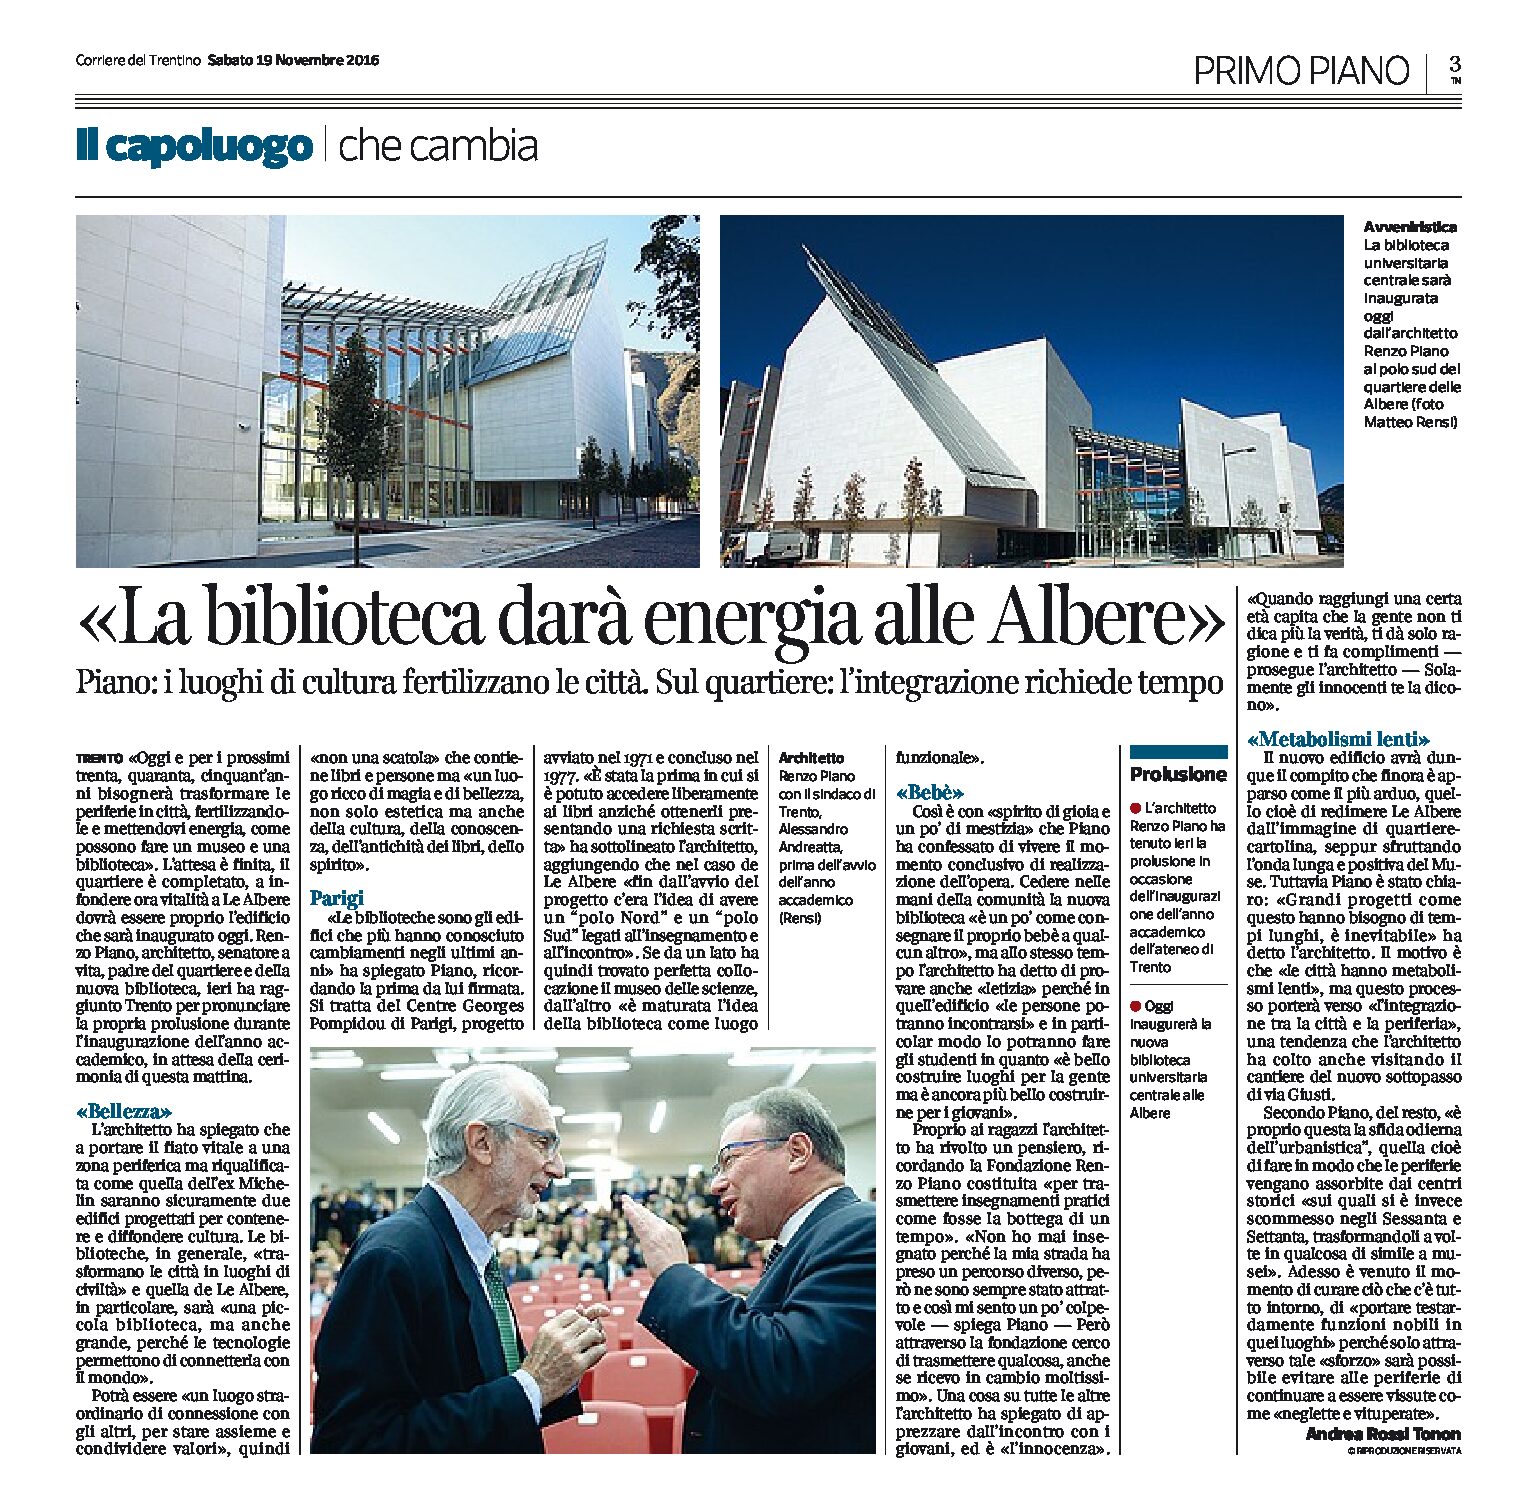 Trento: Renzo Piano “la biblioteca darà energia alle Albere”. Oggi l’inaugurazione